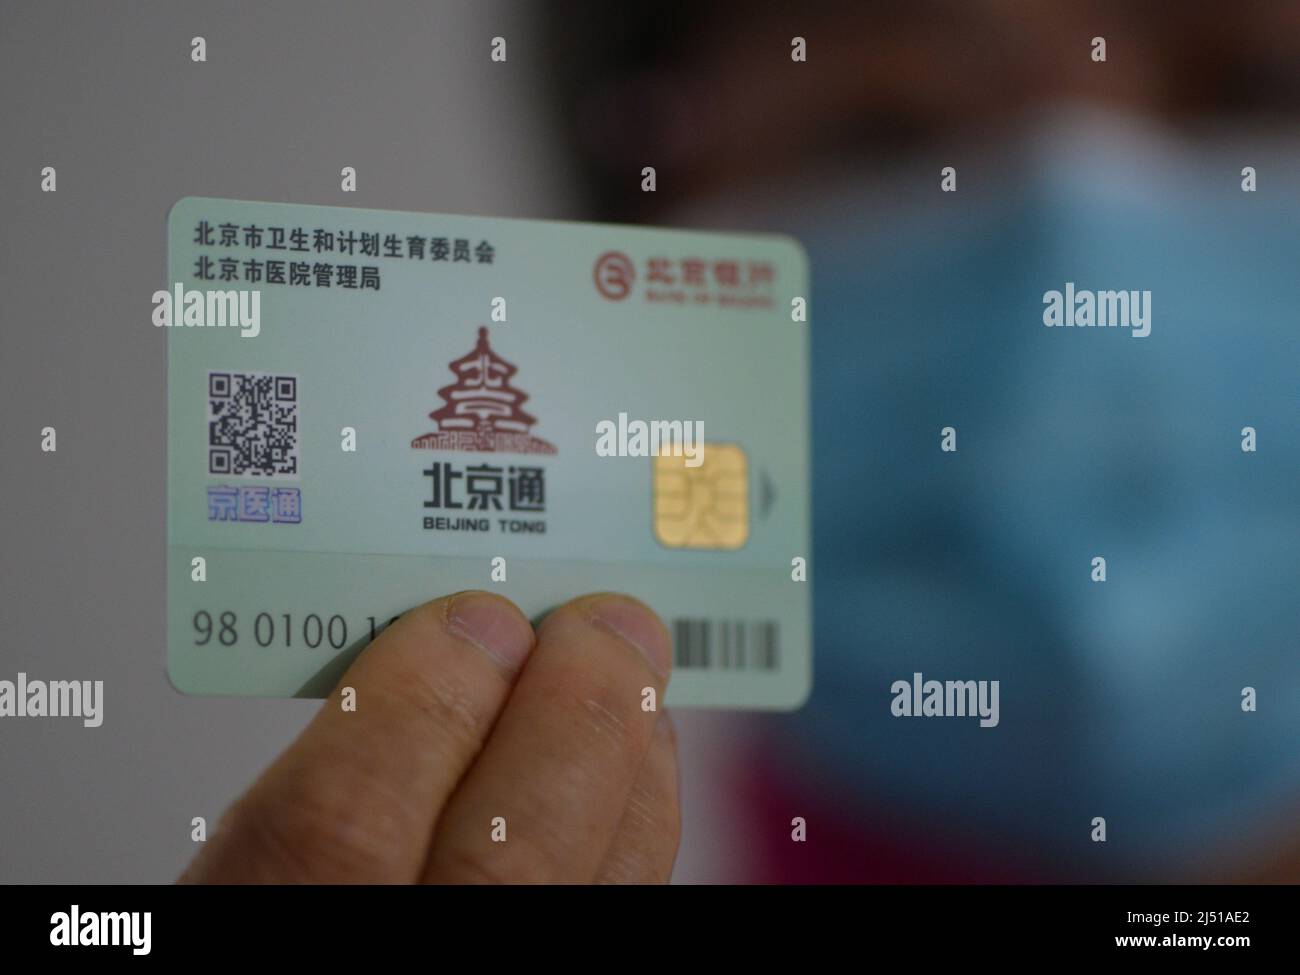 FUYANG, CHINE - 19 AVRIL 2022 - Un citoyen présente une carte médicale de Pékin à Fuyang, province d'Anhui en Chine orientale, le 19 avril 2022. La CARTE est émise pour Banque D'Images